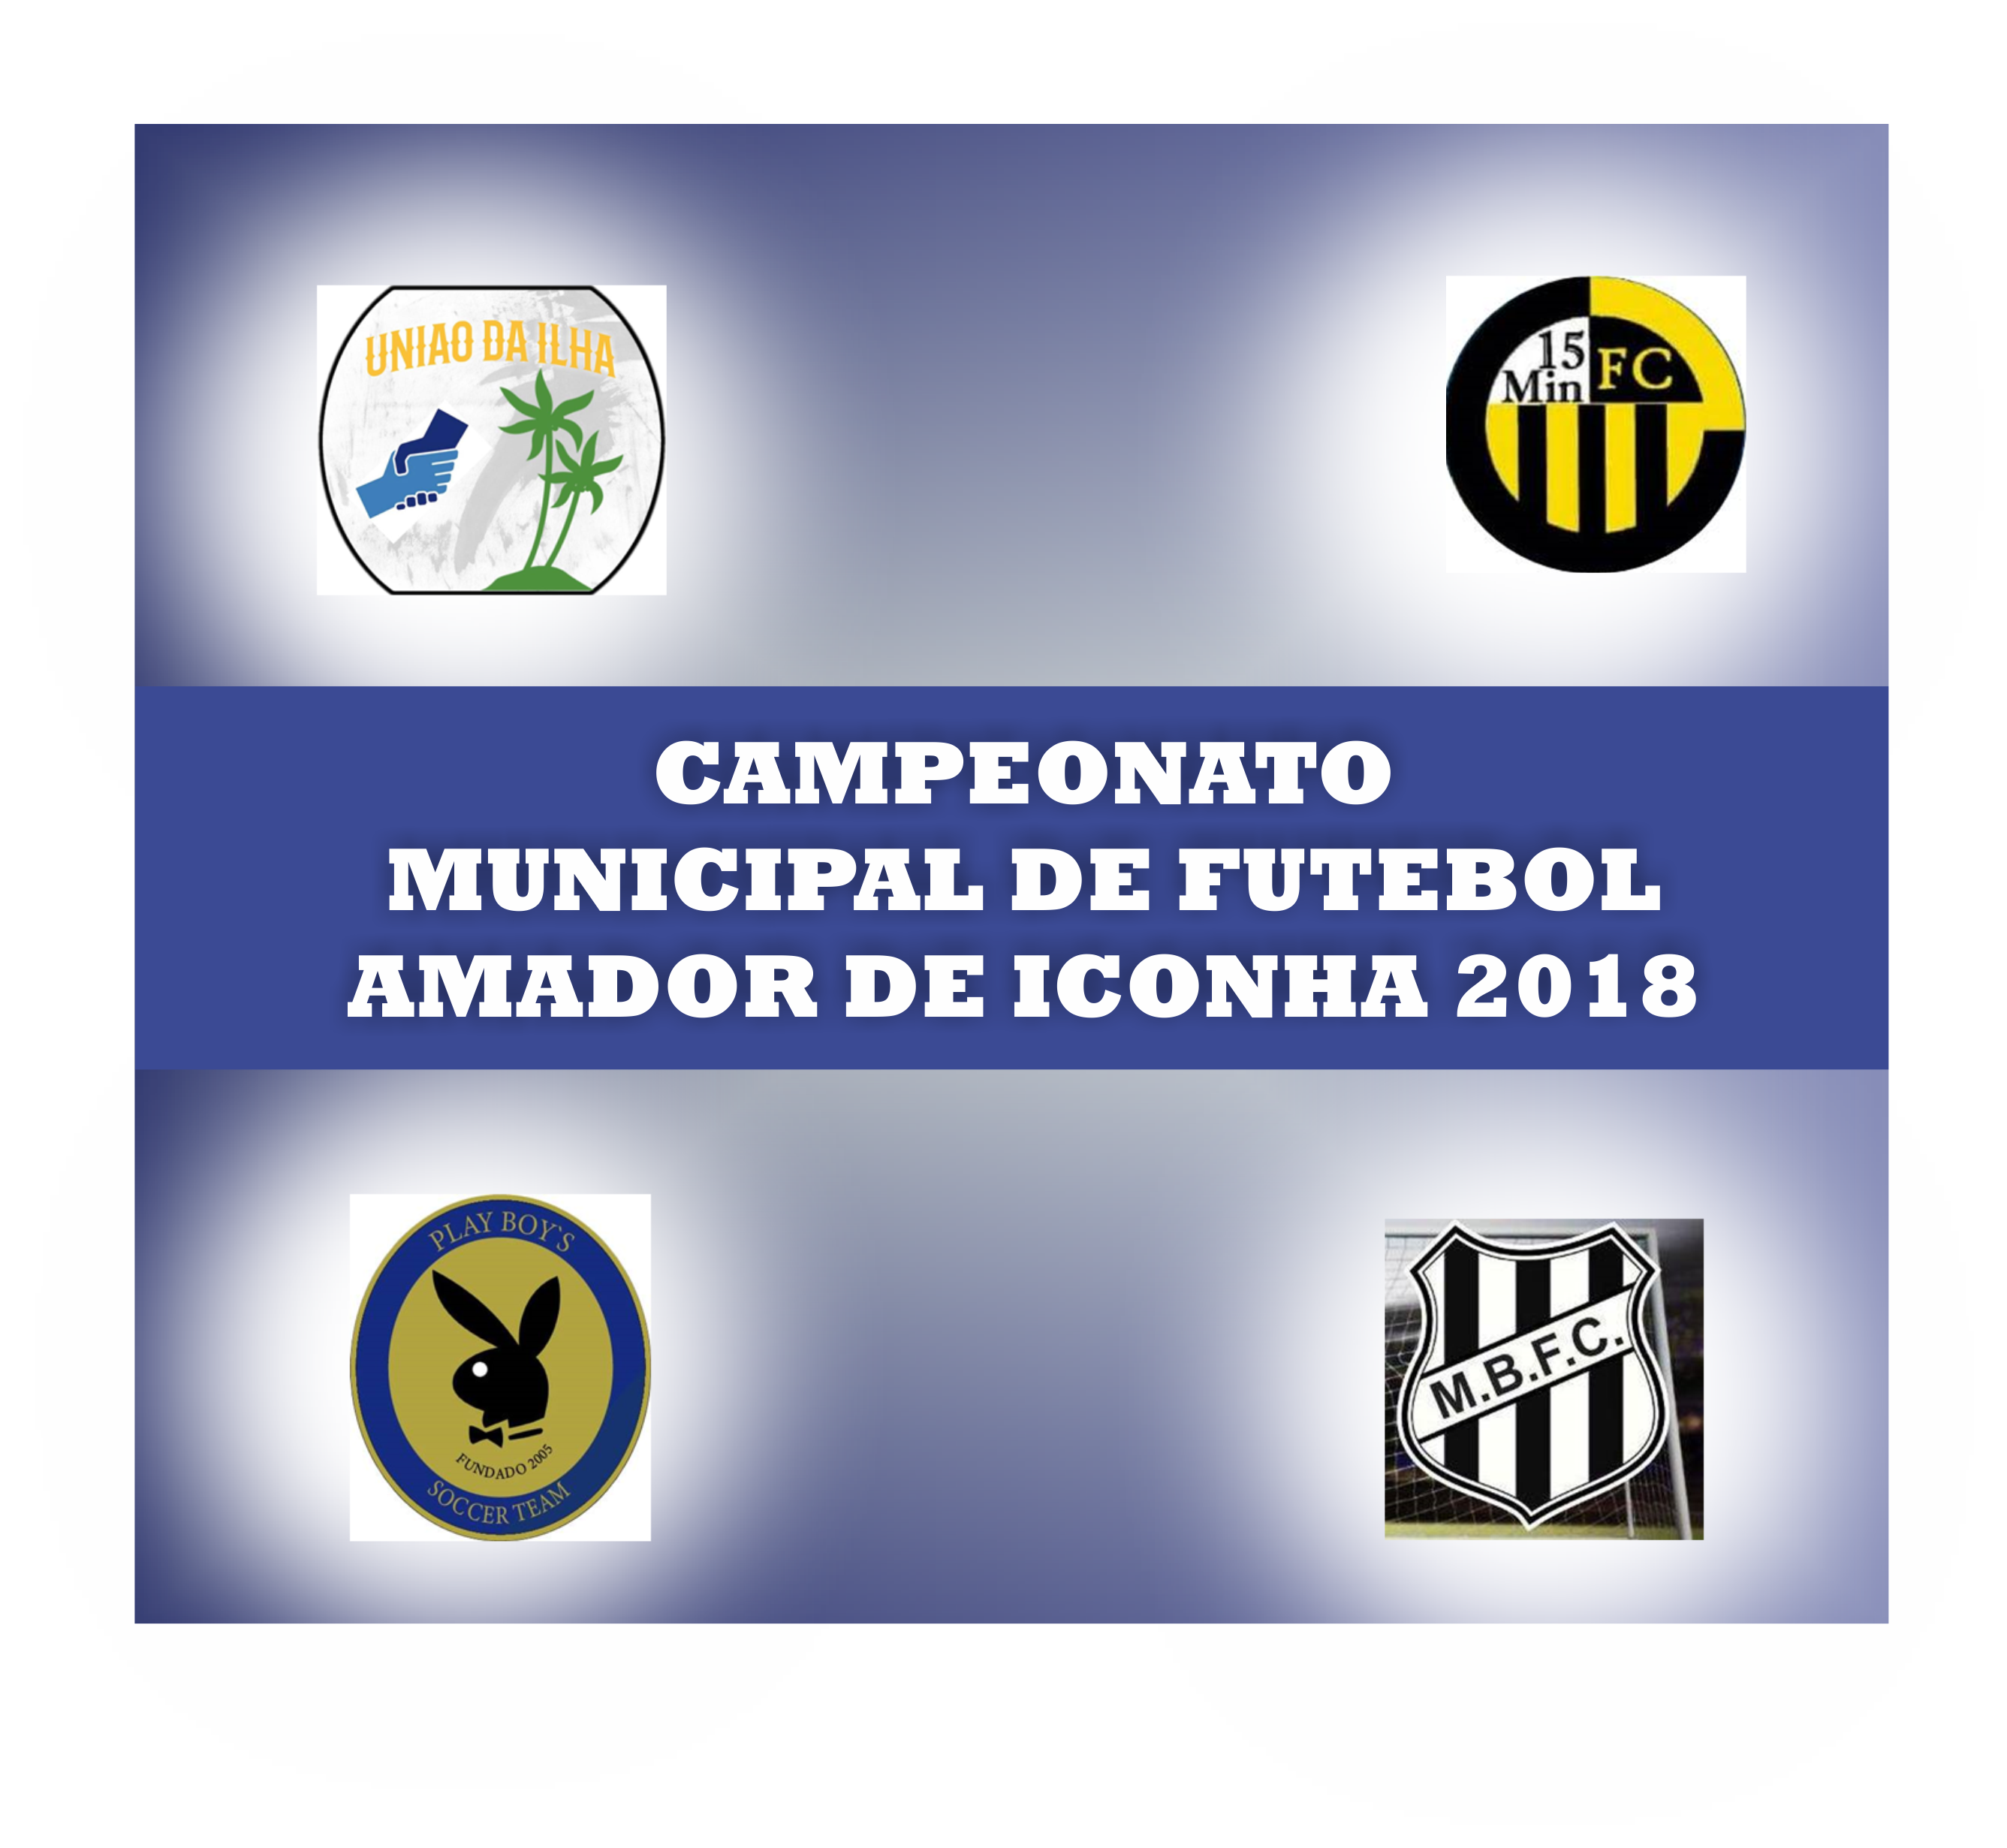 Play boys e União da Ilha venceram na rodada dupla cheia de gols do Campeonato Municipal de Iconha